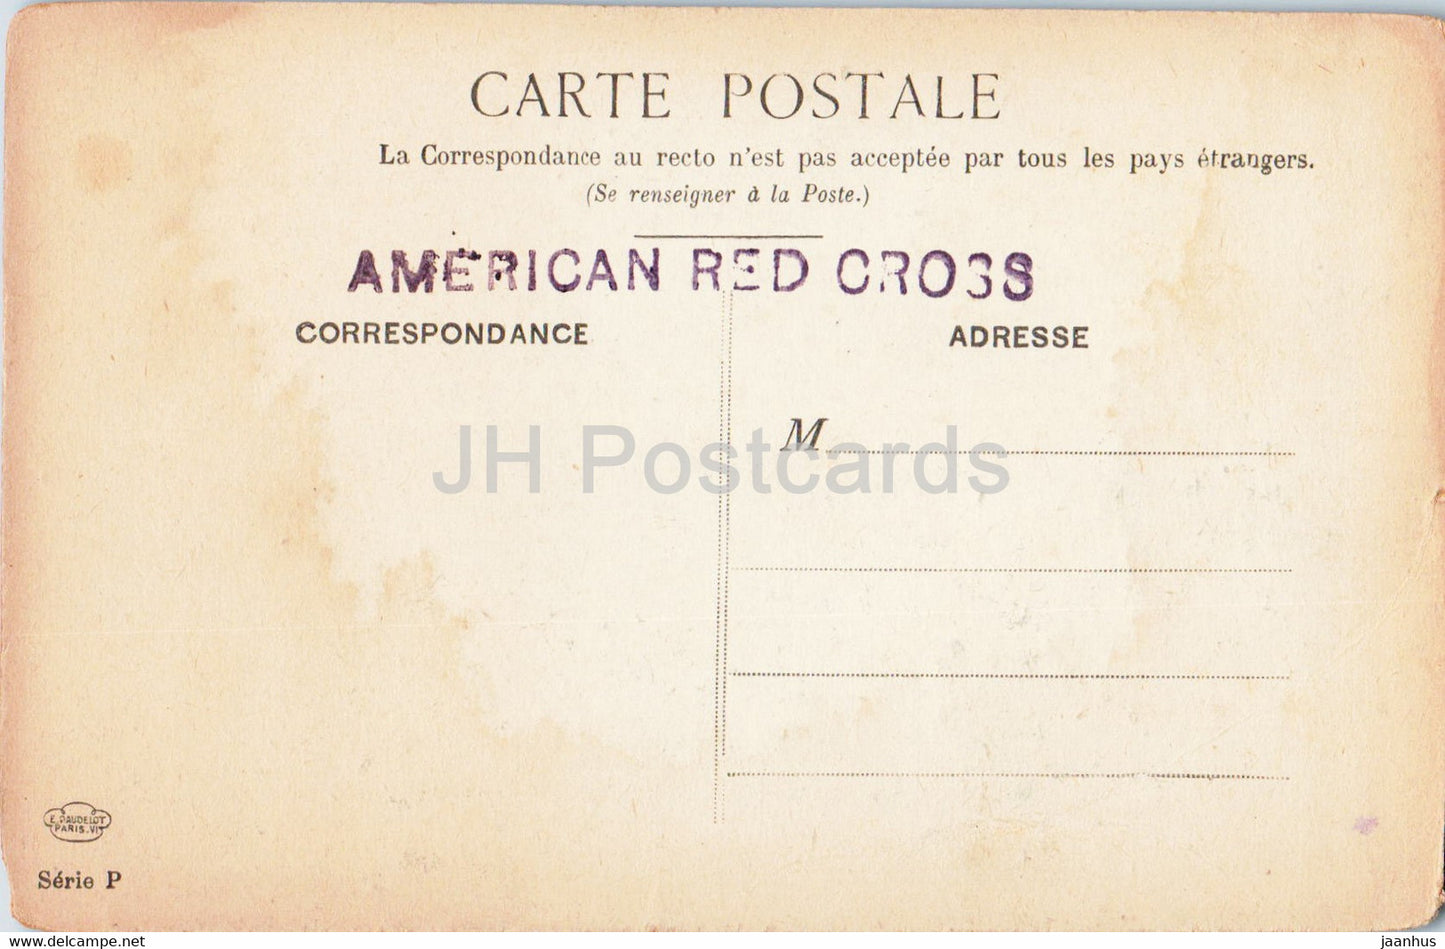 Paris - Notre Dame - Le Tropeau des Monstres - illustration - Croix-Rouge américaine - carte postale ancienne - France - inutilisée